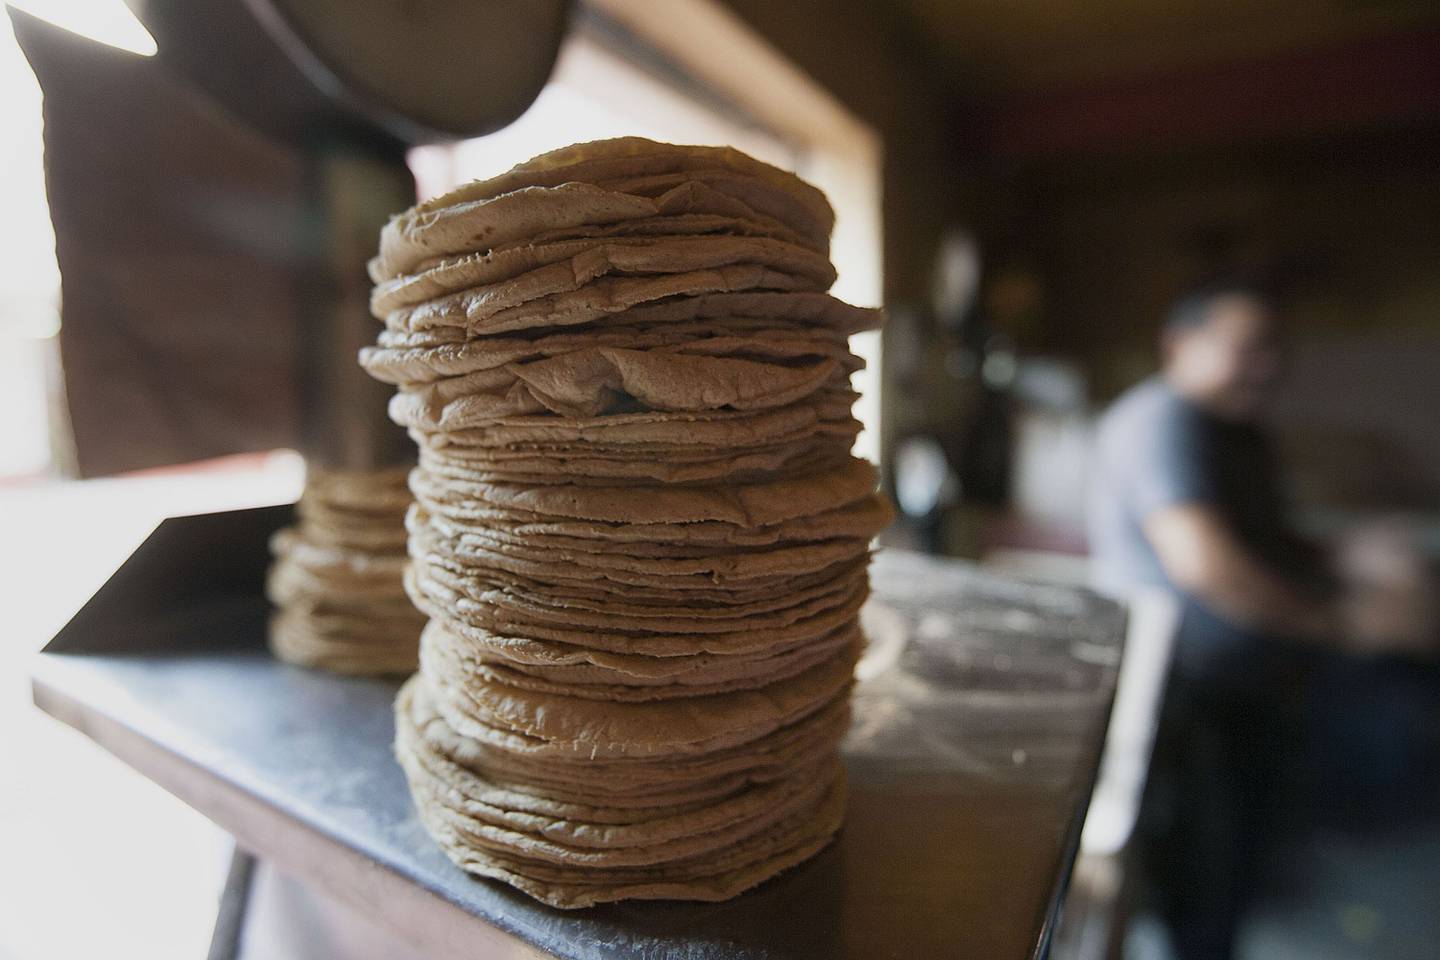 El kilogramo de tortilla registra un aumento de precio en 13 de 49 ciudades de México y en las cuatro zonas metropolitanas más importantes del país, de acuerdo con el Sistema Nacional de Información e Integración de Mercados (SNIIM) de la Secretaría de Economía.